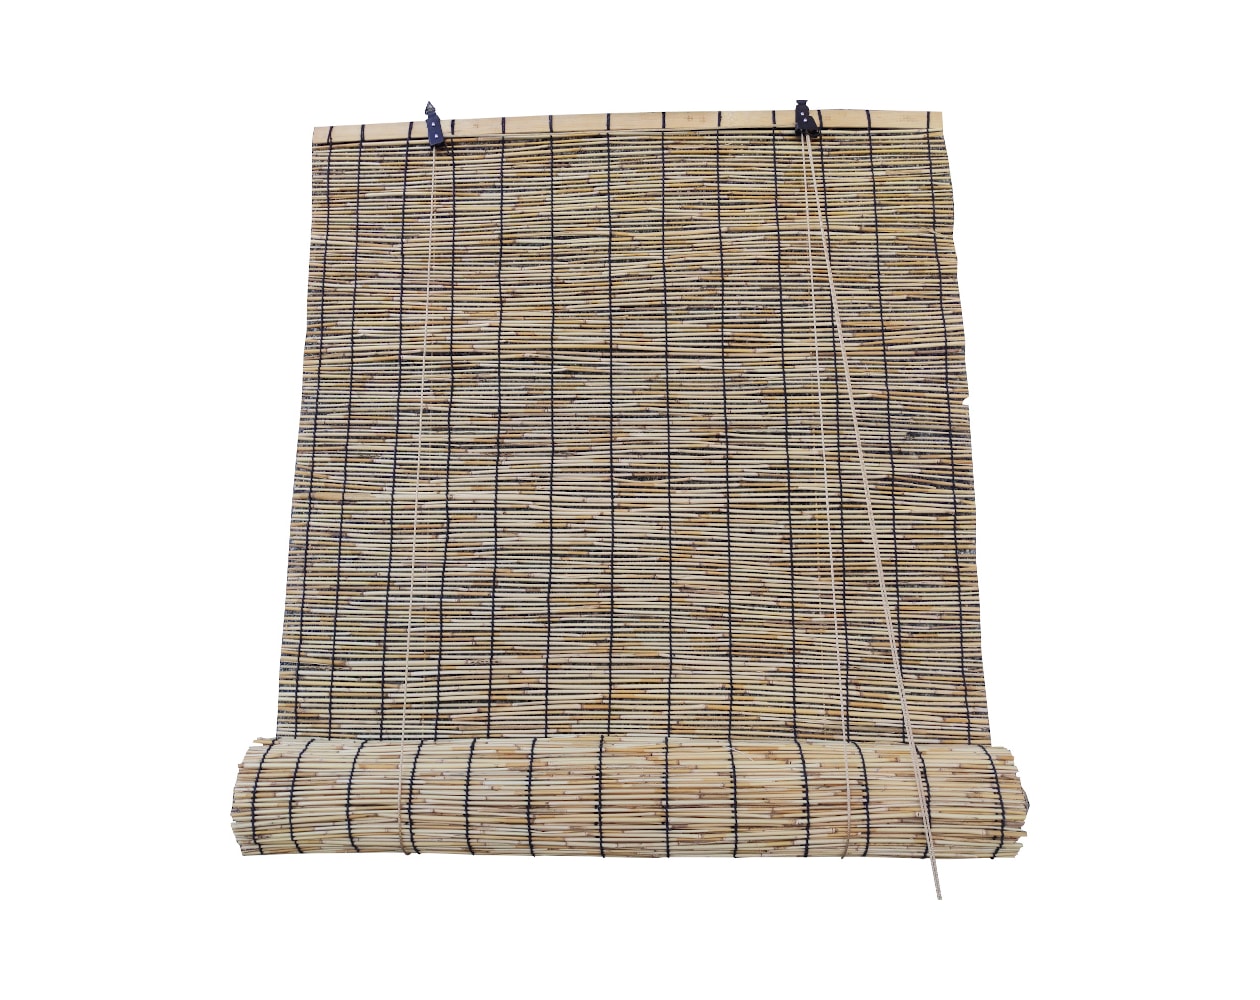 Estores Enrollables De Bambú Natural Para Puertas Y Ventanas 90x180 Cm